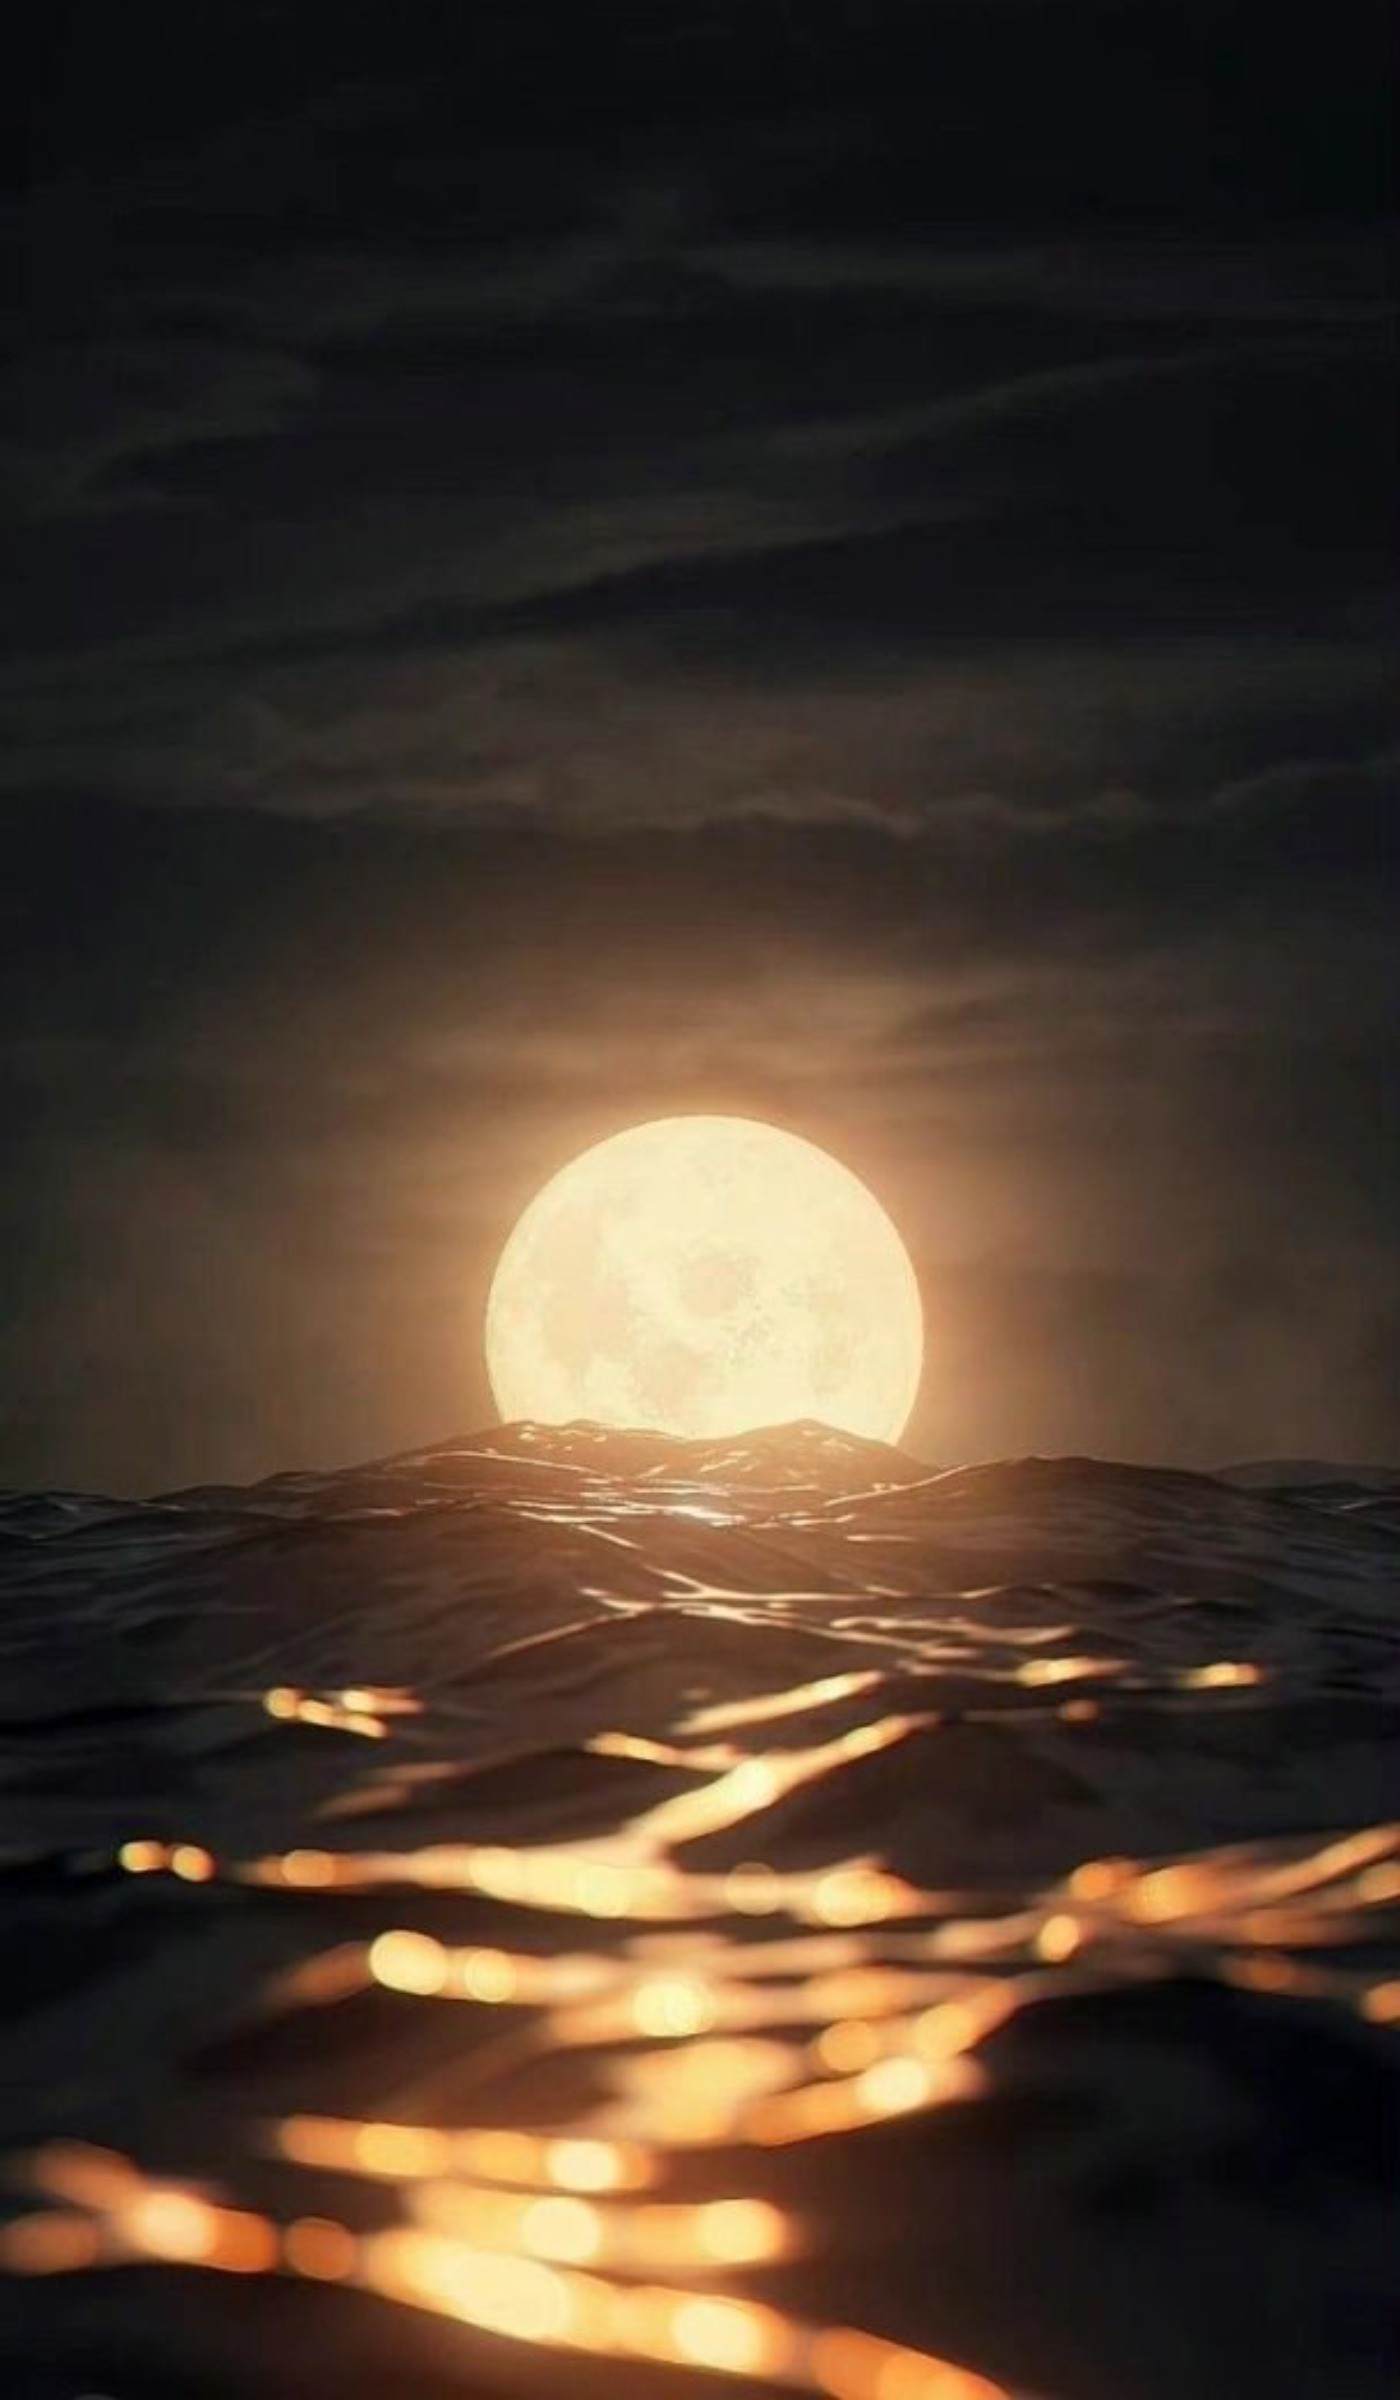 زیبا ترین ترکیب دنیا قطعا ماه و دریاست